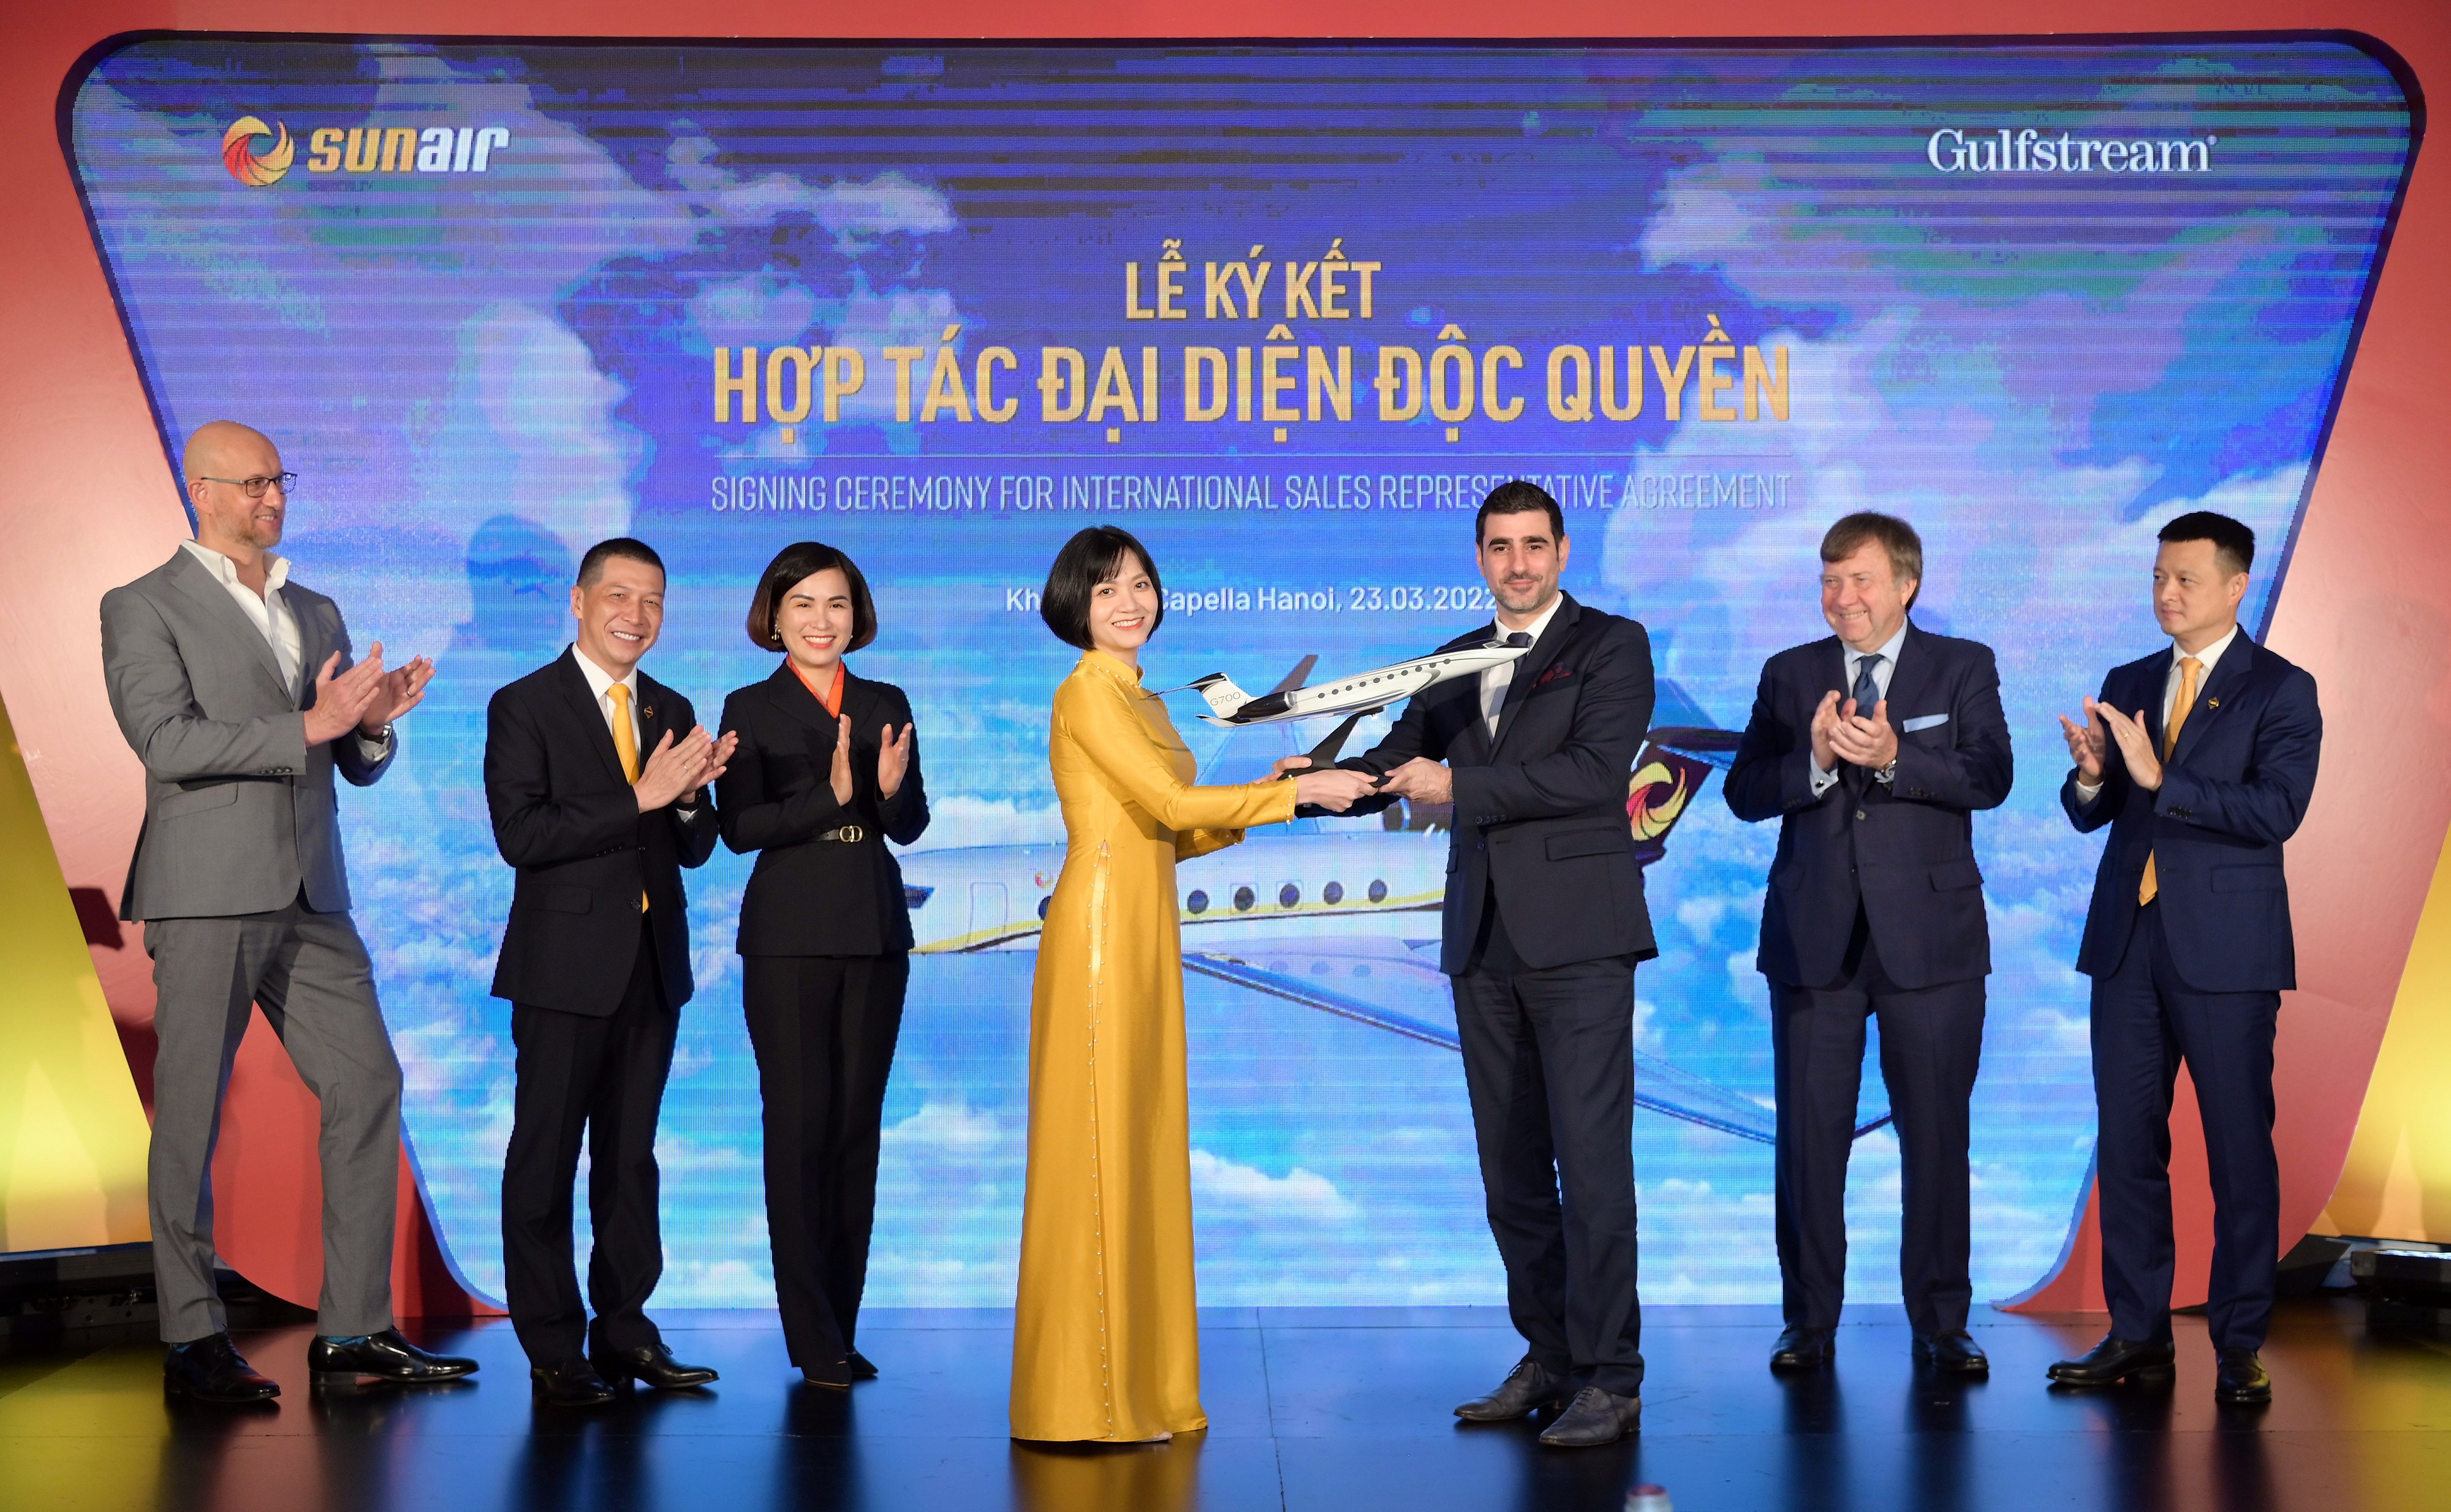 Cần biết - Hãng hàng không Sun Air chính thức trở thành đại diện độc quyền thương hiệu máy bay hạng sang Gulfstream tại Việt Nam (Hình 3).